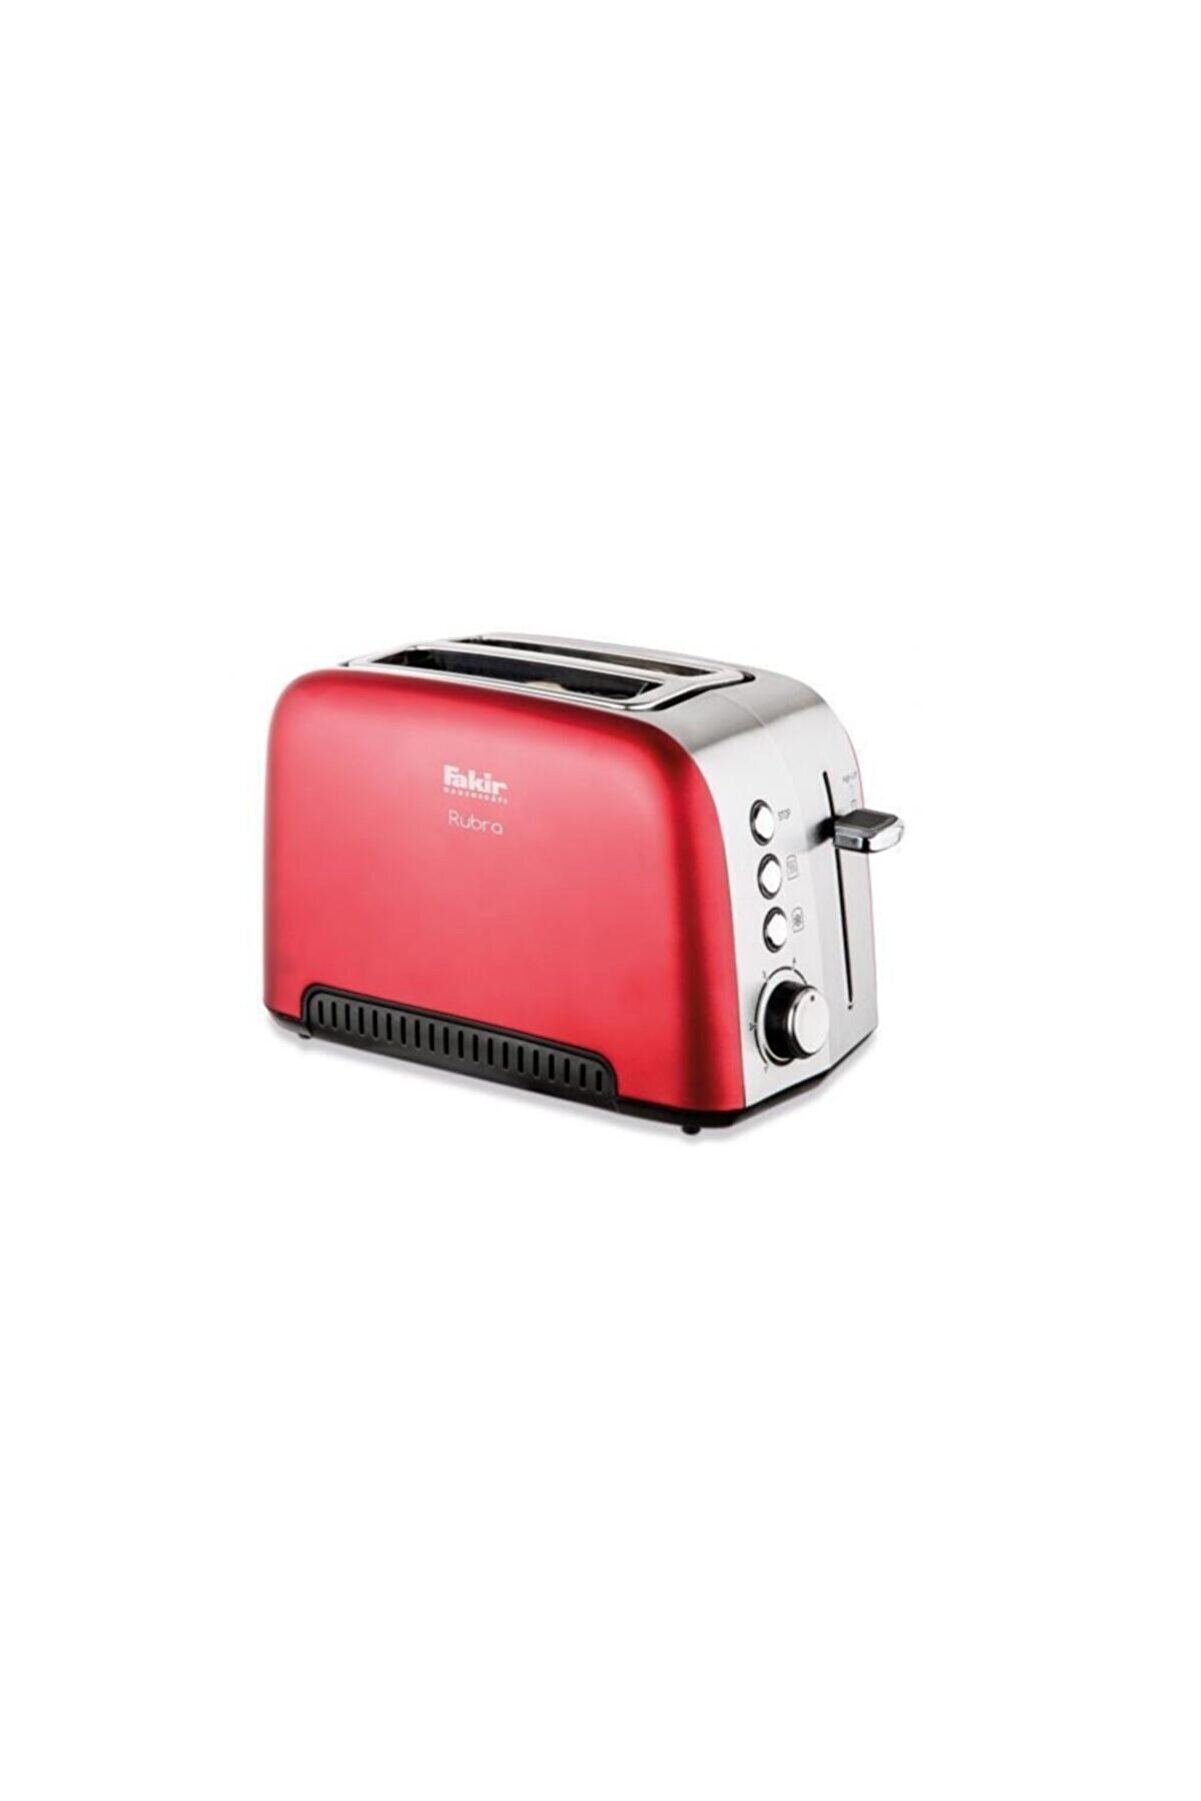 Fakir Rubra Ekmek Kızartma Makinesi (Kırmızı)